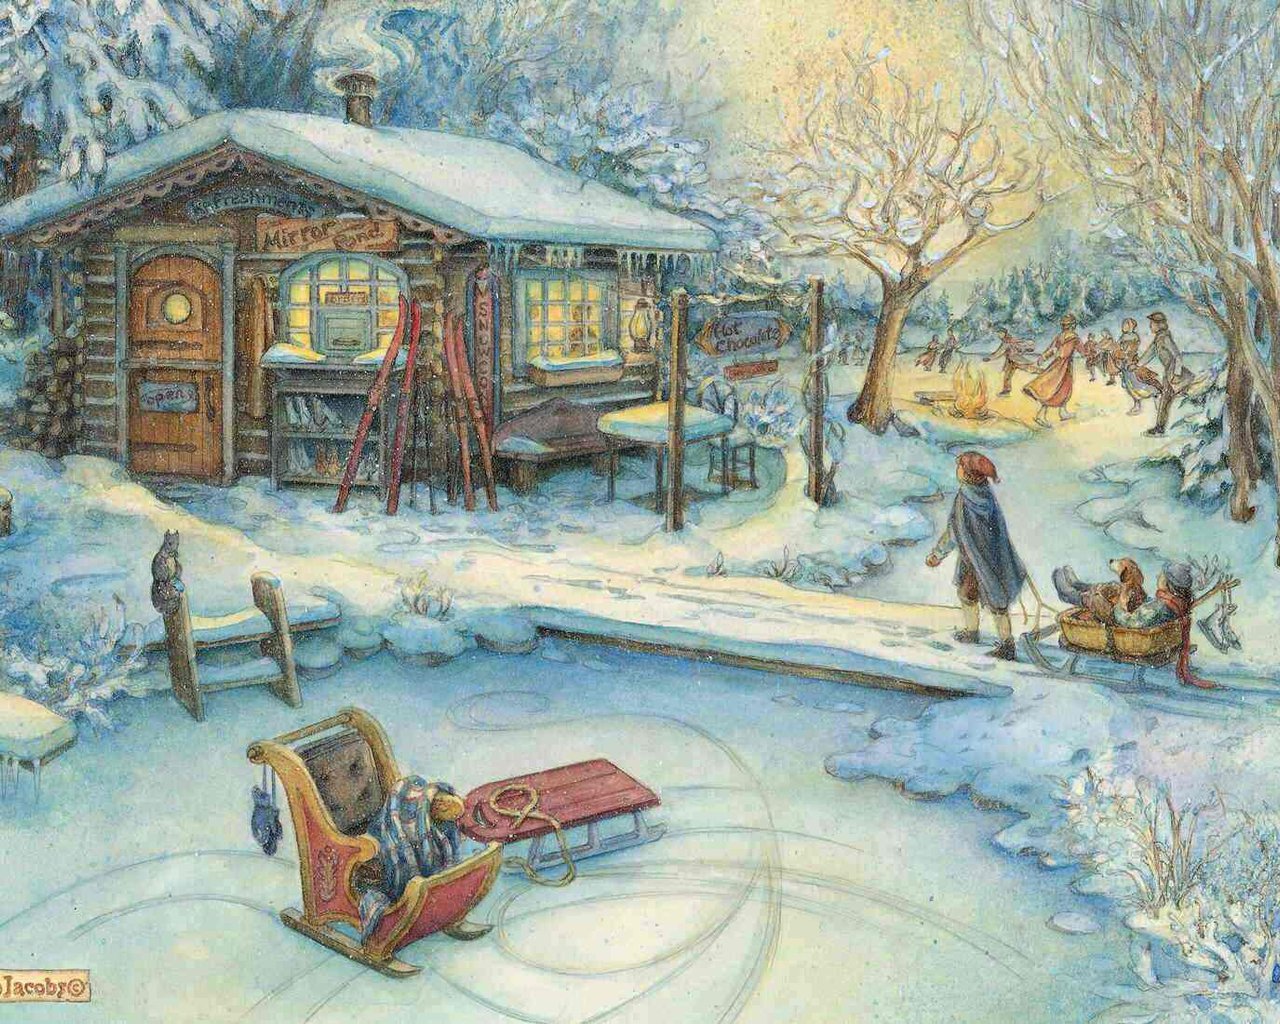 3d обои Рождественские праздники...  Детишки катаются на санках и на коньках рядом с  домиком, где можно обогреться  и перекусить. На стенах этой маленькой харчевни можно увидеть зазывающие вывески *Hot cockolate* и другие. Всё так  красиво и мирно... (Mirro # 34169